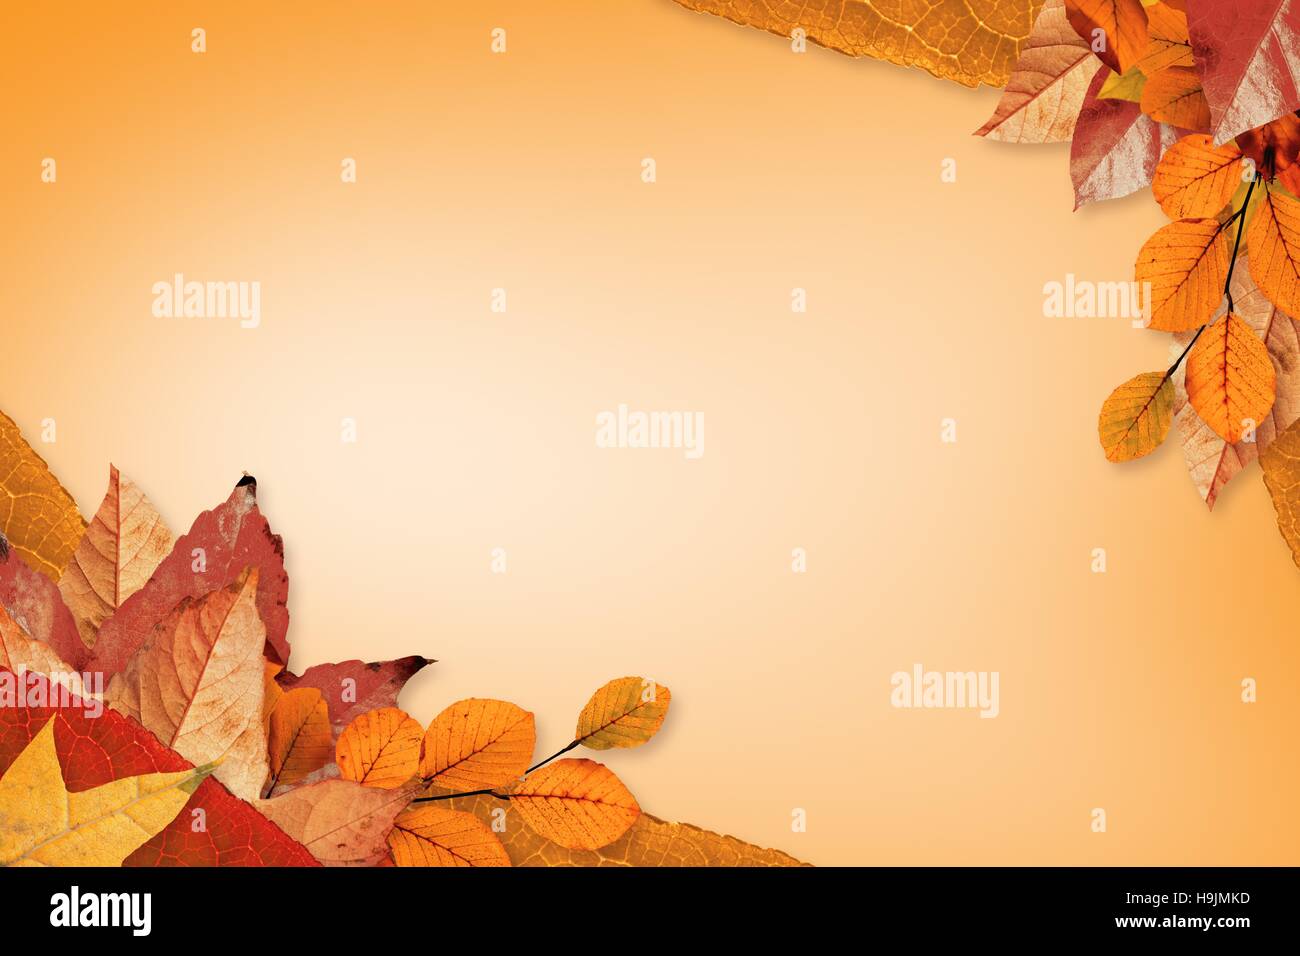 Autumn leaves pattern Stock Photo